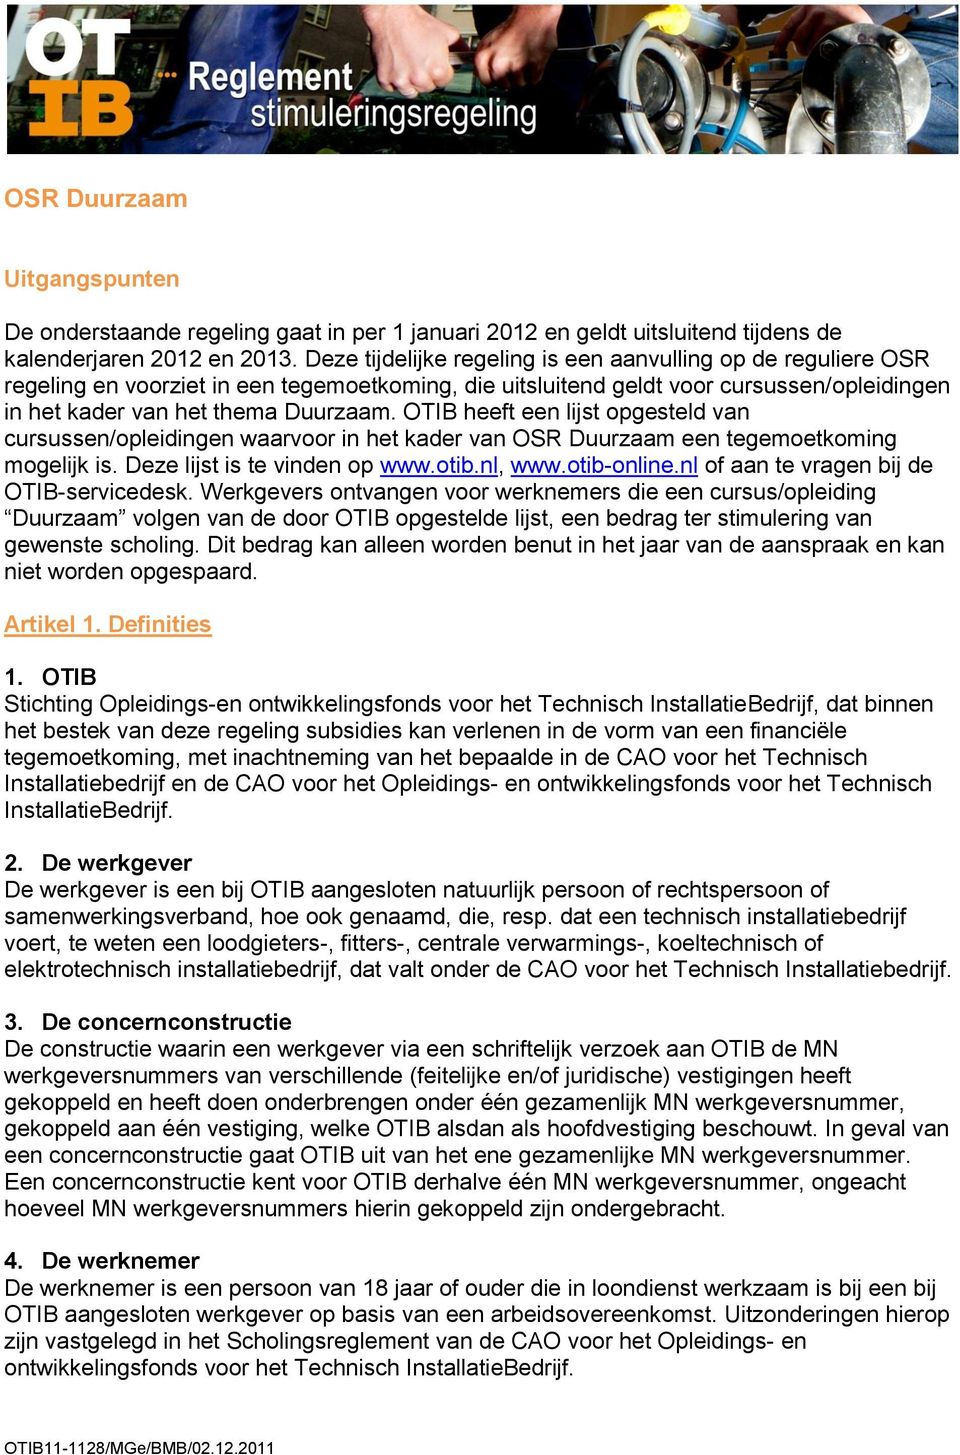 OTIB heeft een lijst opgesteld van cursussen/opleidingen waarvoor in het kader van OSR Duurzaam een tegemoetkoming mogelijk is. Deze lijst is te vinden op www.otib.nl, www.otib-online.